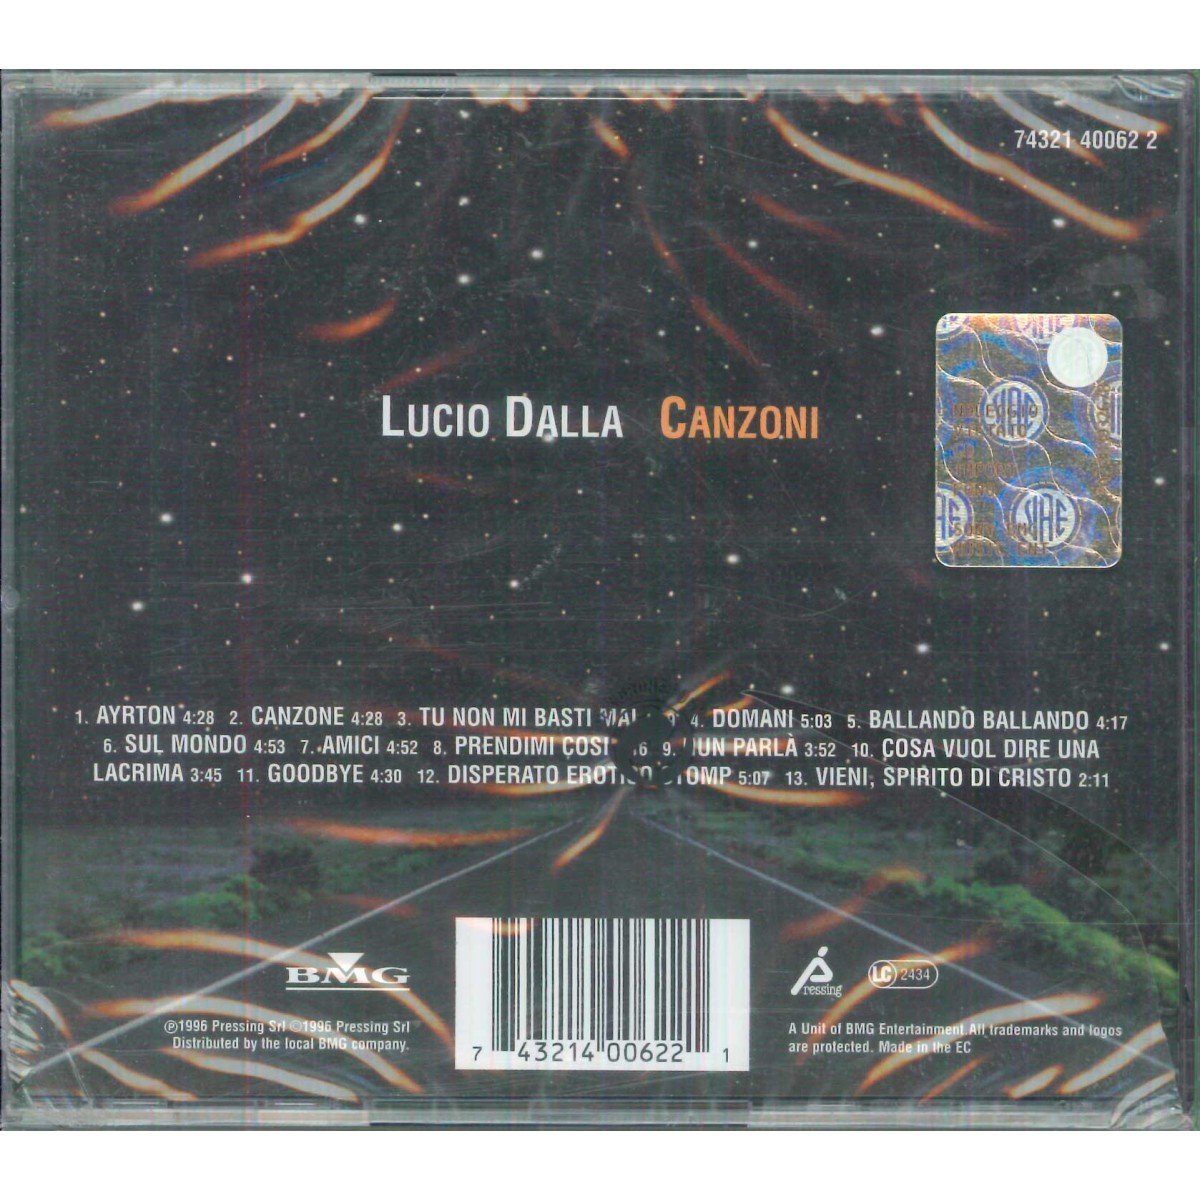 Lucio Dalla CD Canzoni / BMG Pressing ‎– 74321 40062 2